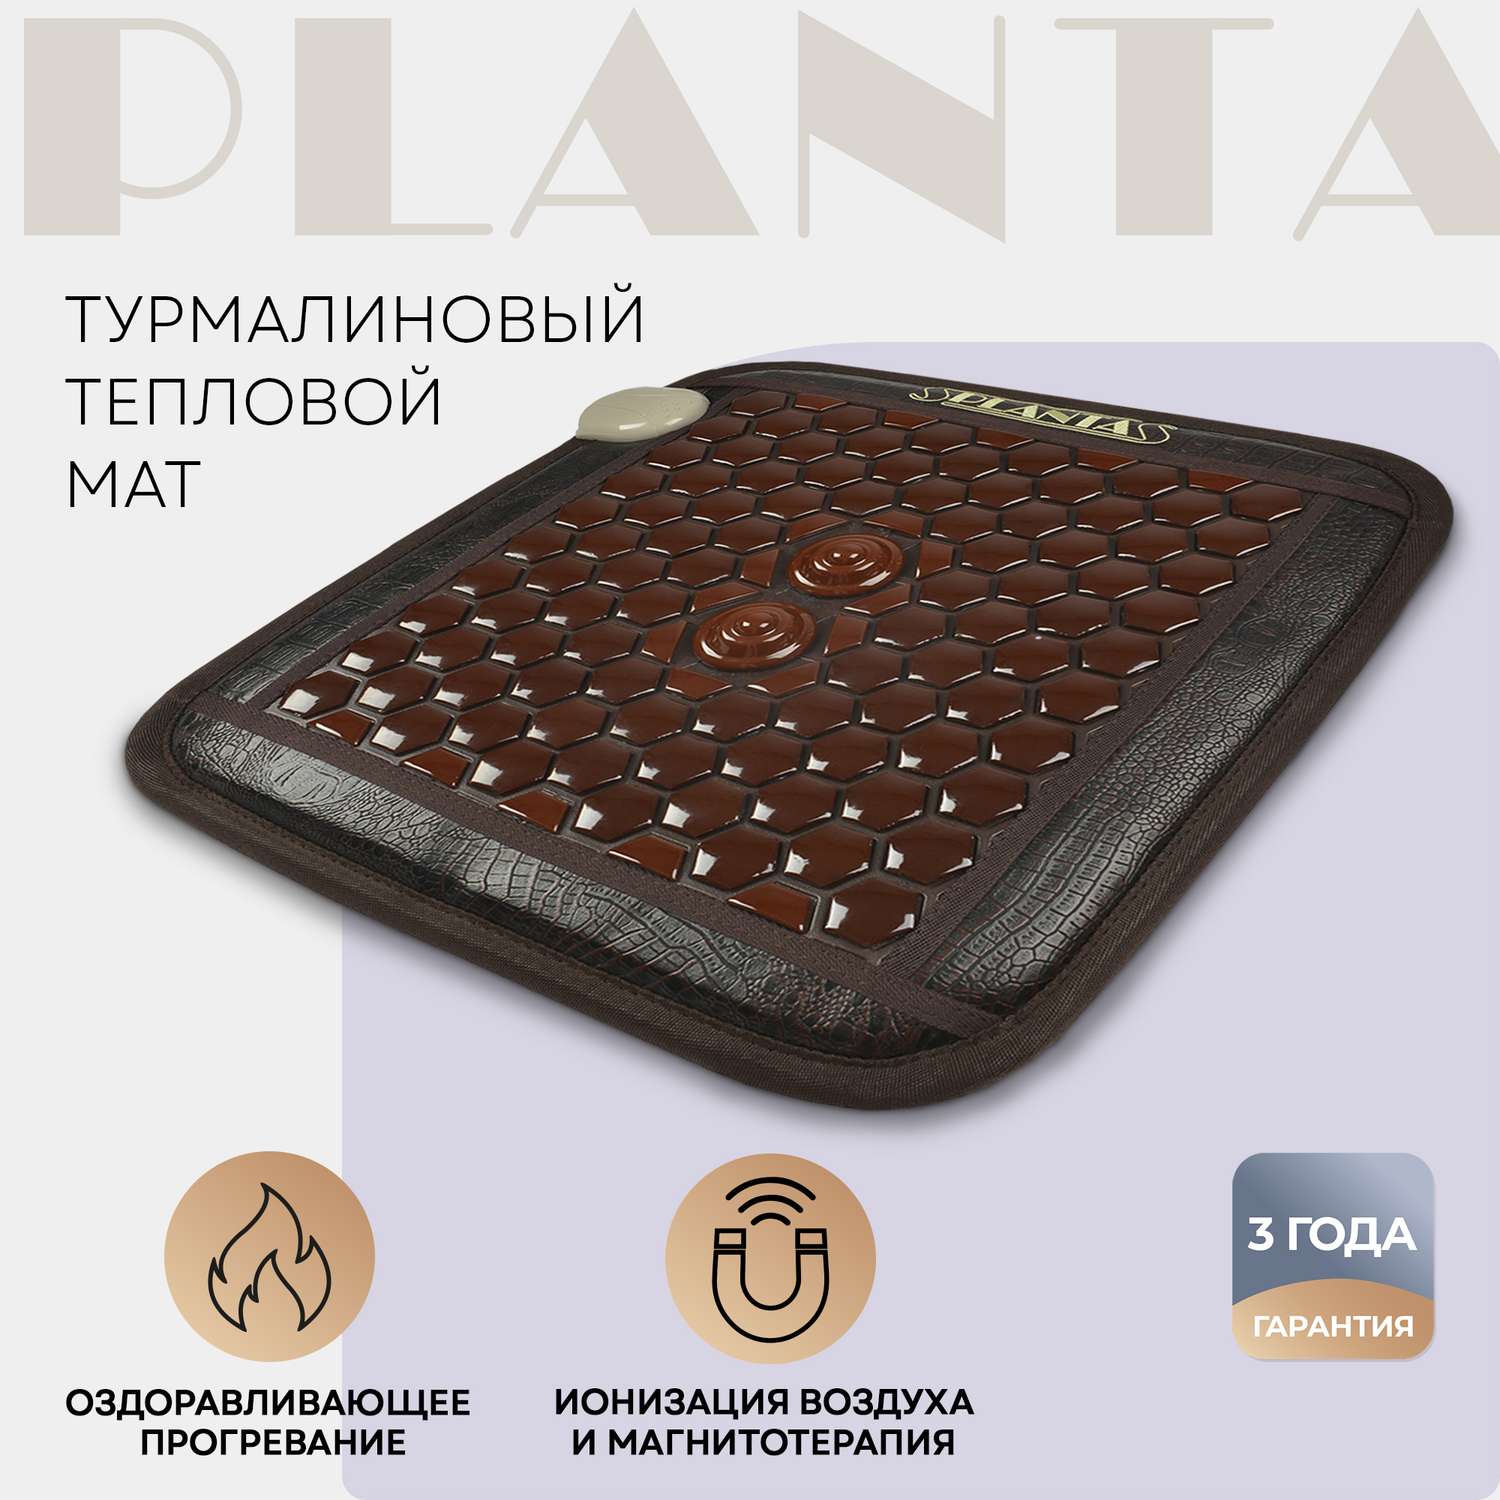 Турмалиновый тепловой мат Planta PL-CANVAS1 102 камня нагрев до 70 градусов - фото 1